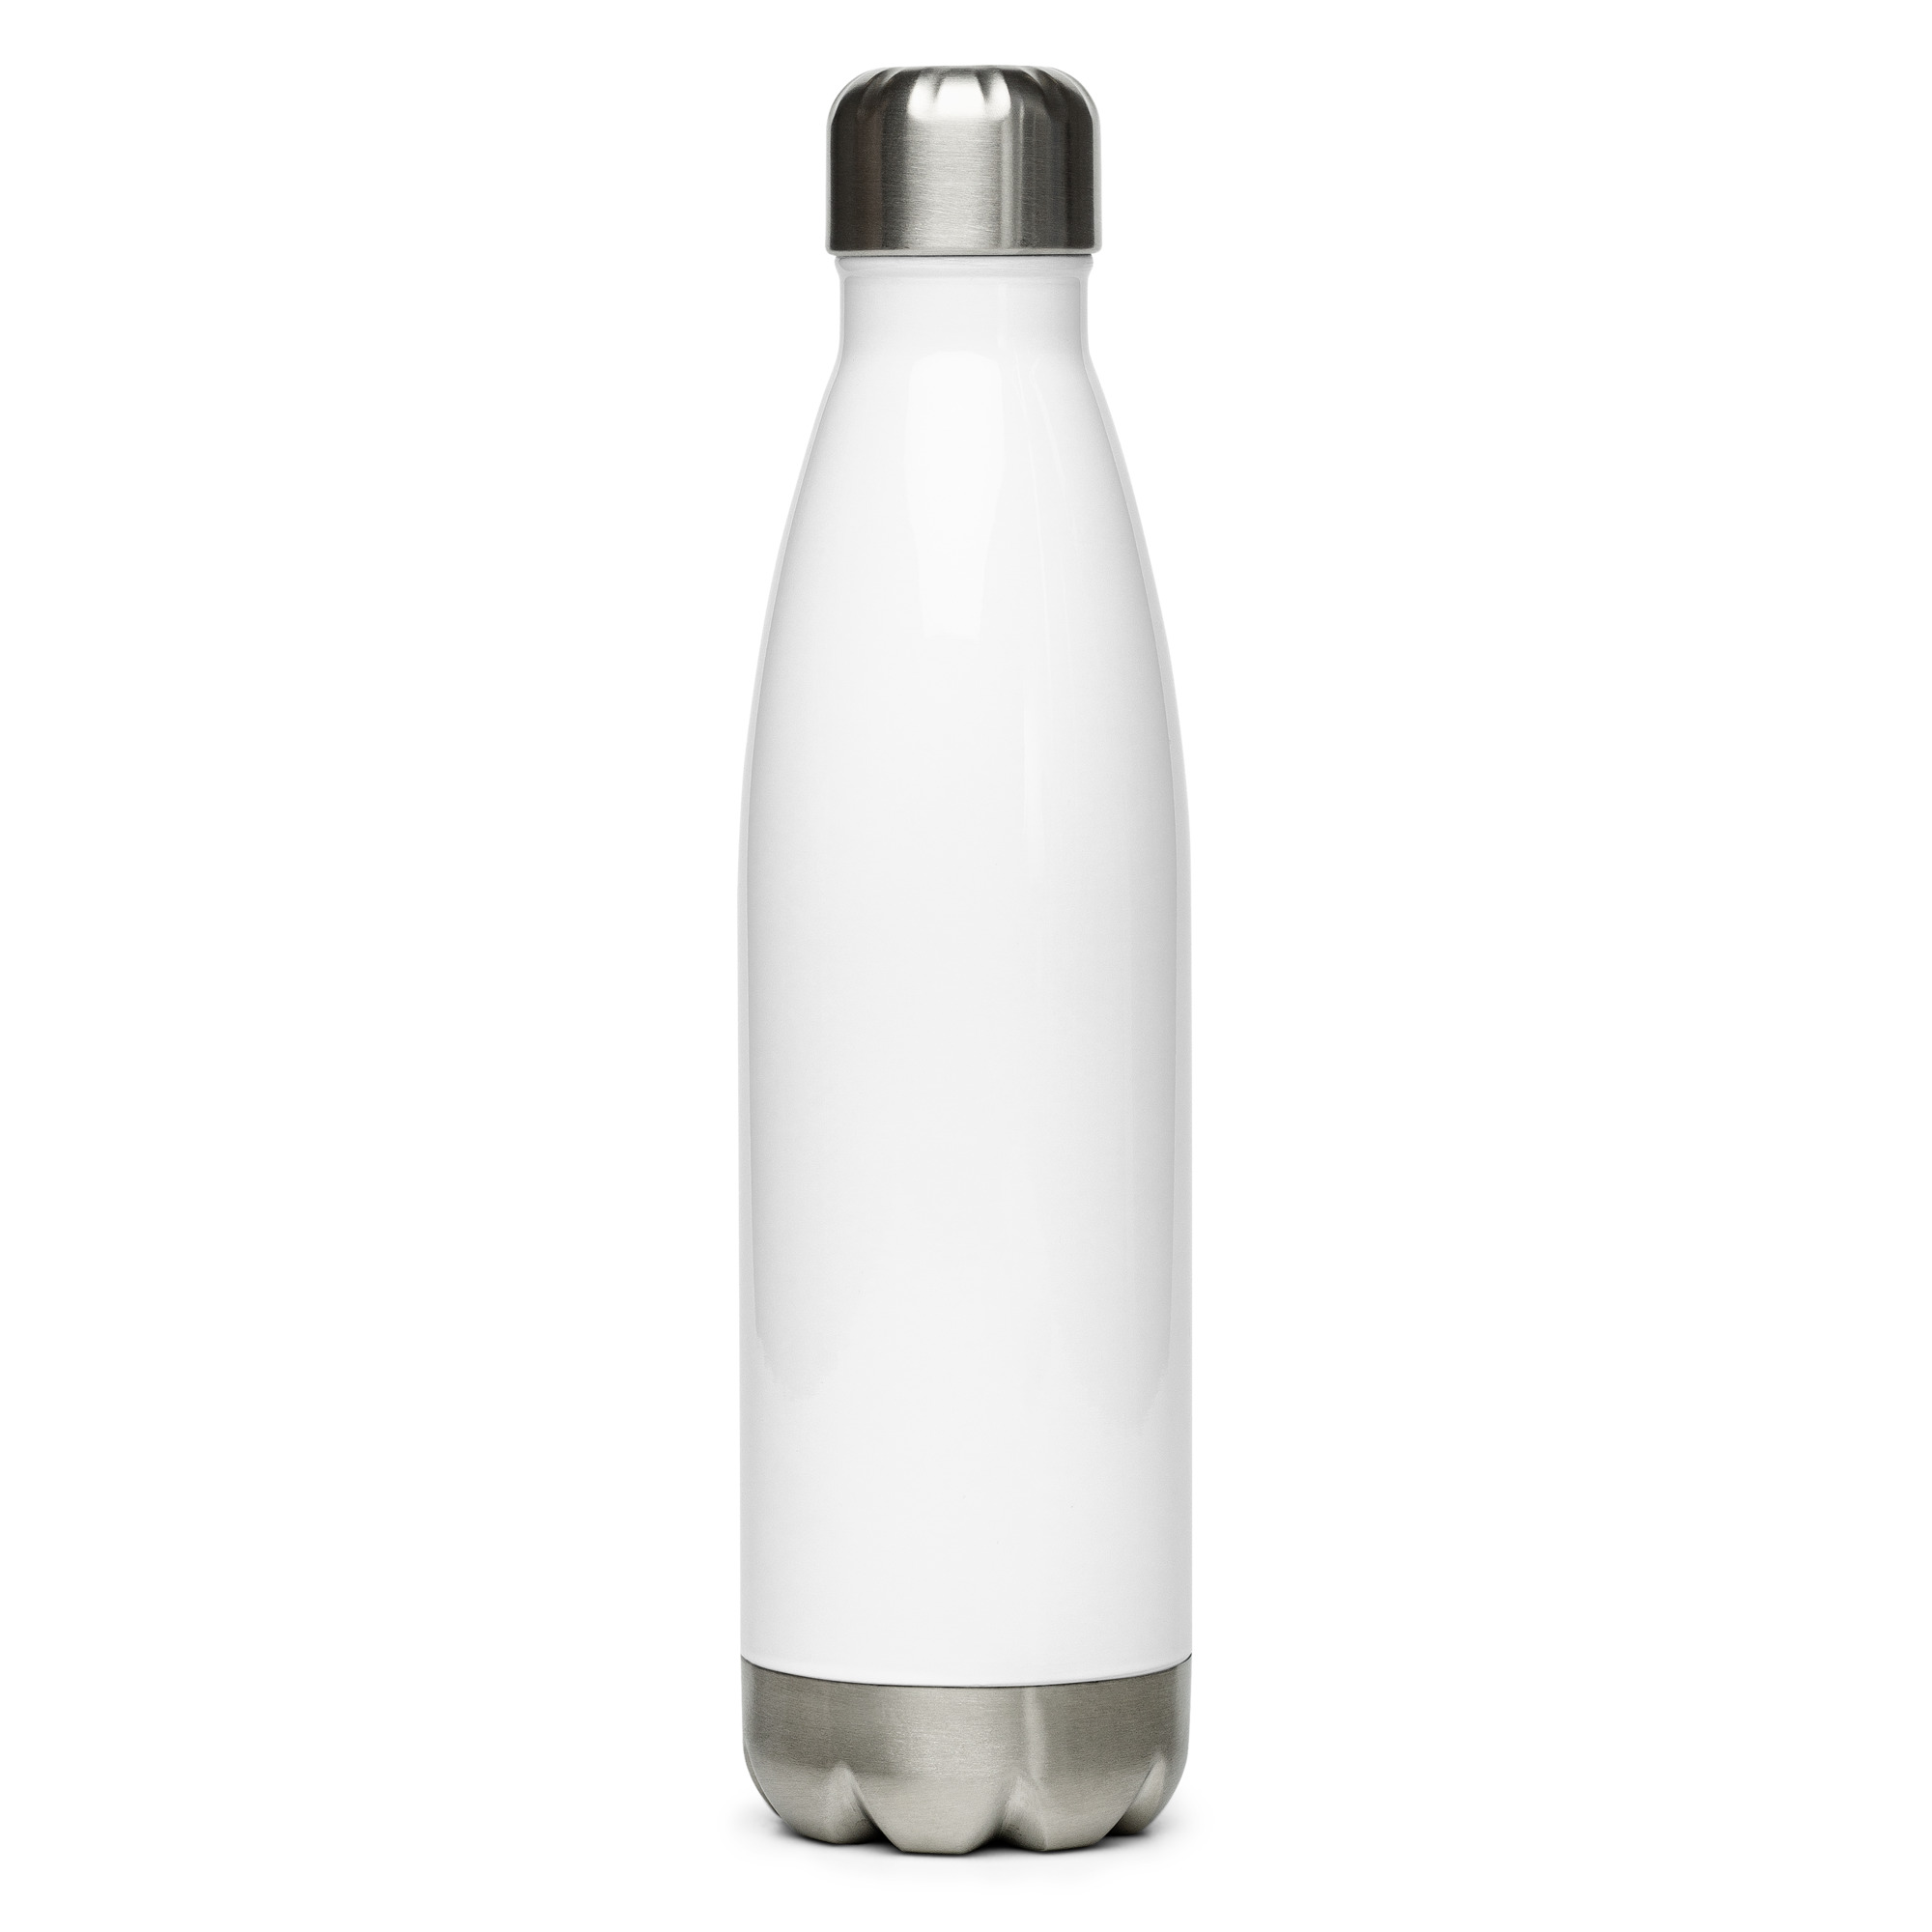 OK Stainless Steel Water Bottle